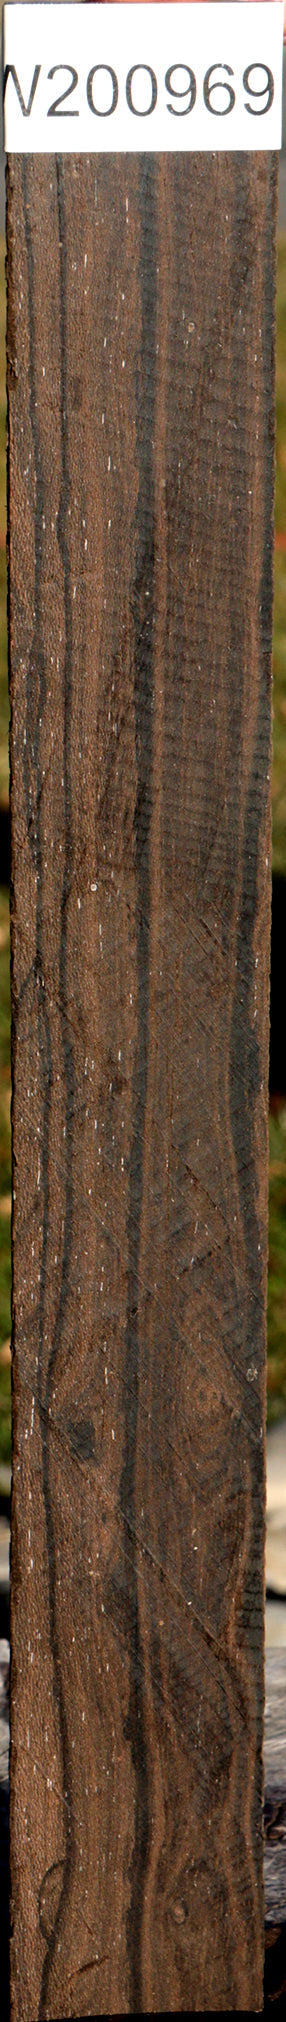 Ziricote Micro Lumber